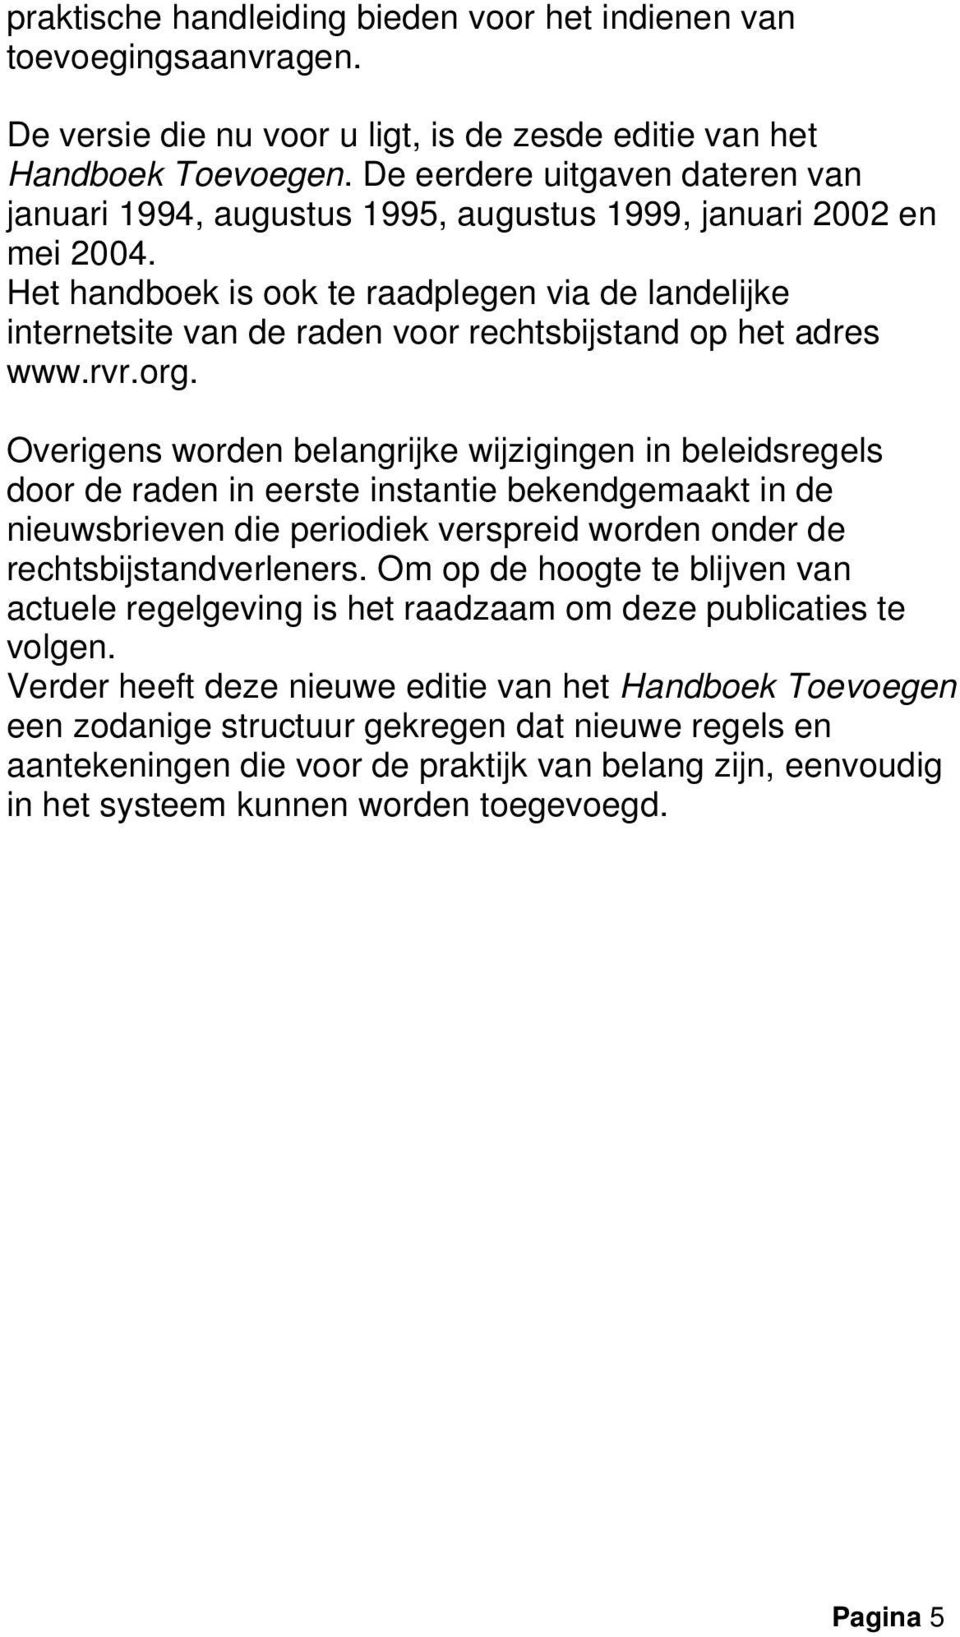 Het handboek is ook te raadplegen via de landelijke internetsite van de raden voor rechtsbijstand op het adres www.rvr.org.